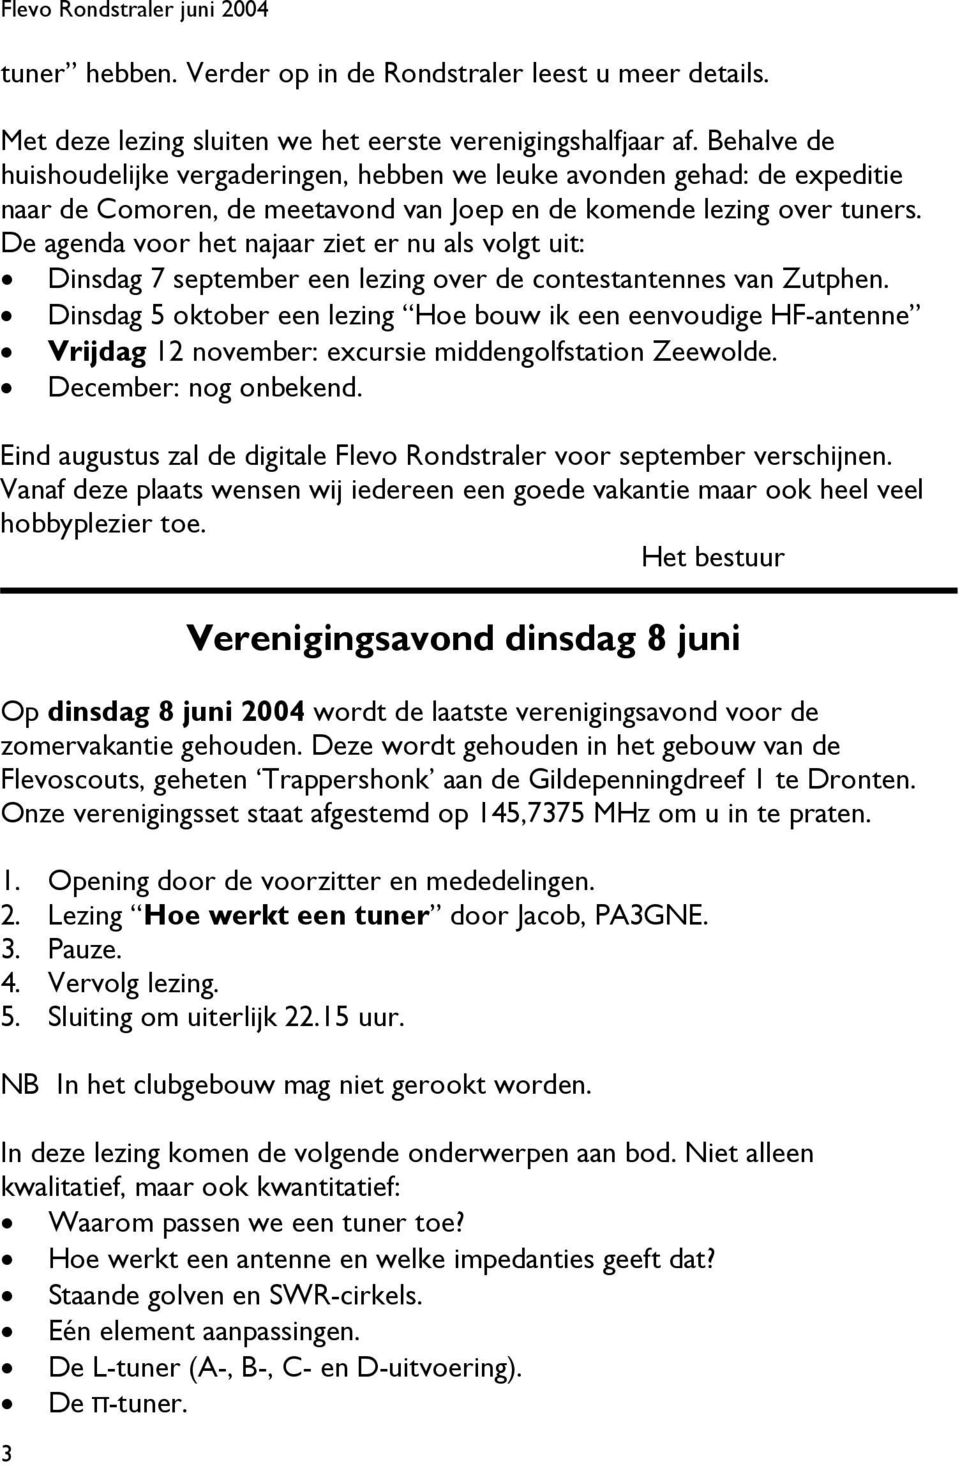 De agenda voor het najaar ziet er nu als volgt uit: Dinsdag 7 september een lezing over de contestantennes van Zutphen.